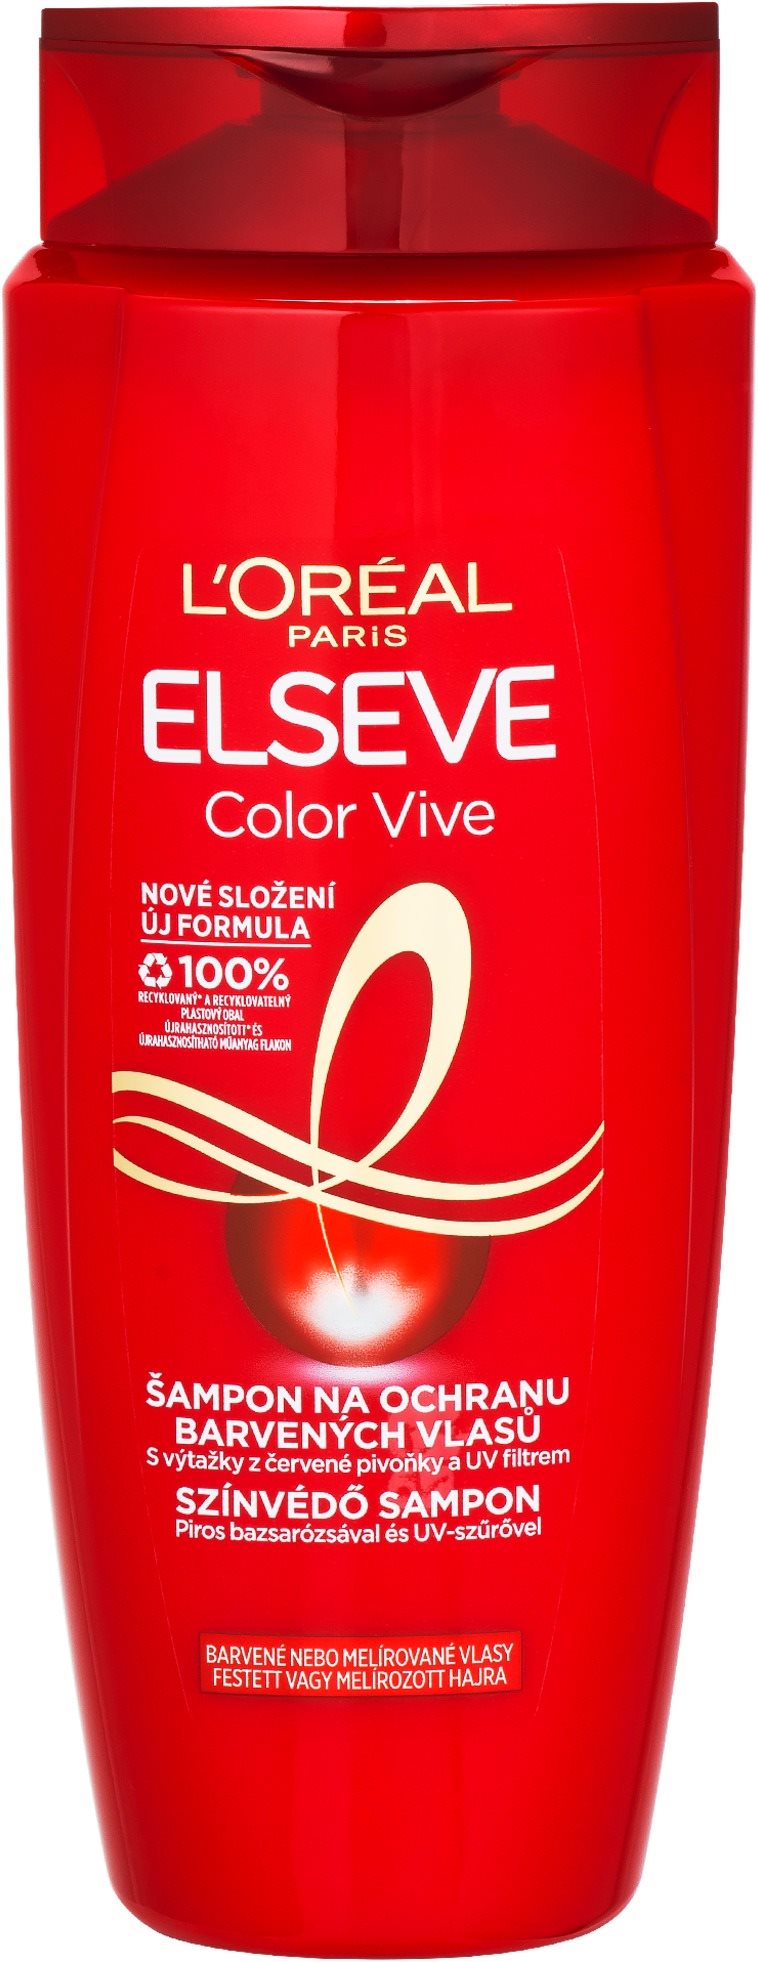 ĽORÉAL PARIS Elseve Color Vive sampon festett hajra 700 ml